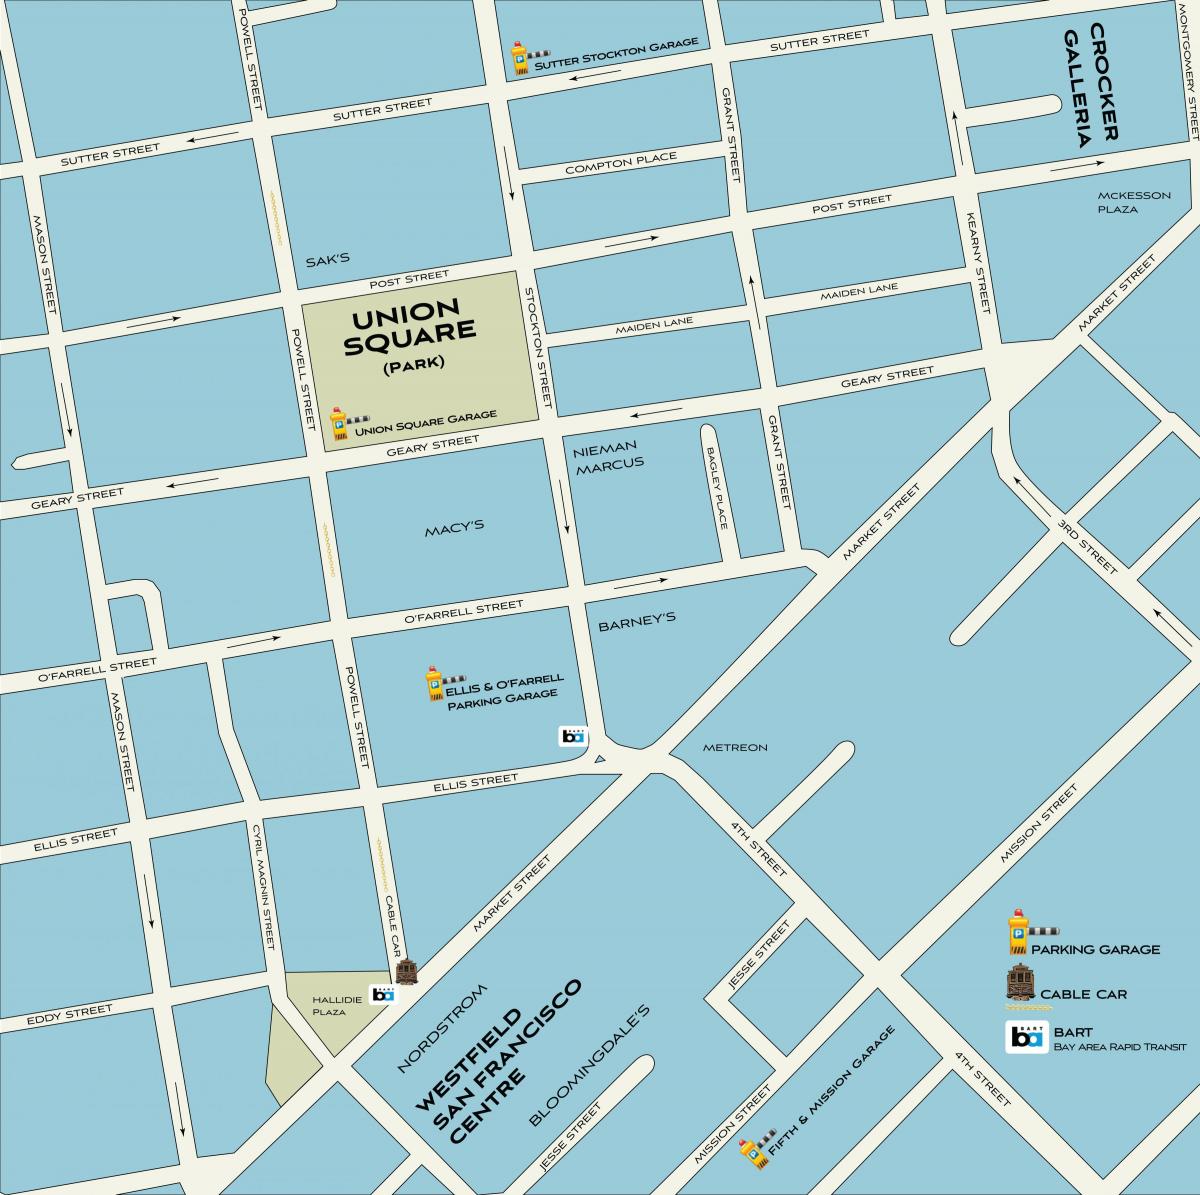 San Francisco nakupovanje zemljevid